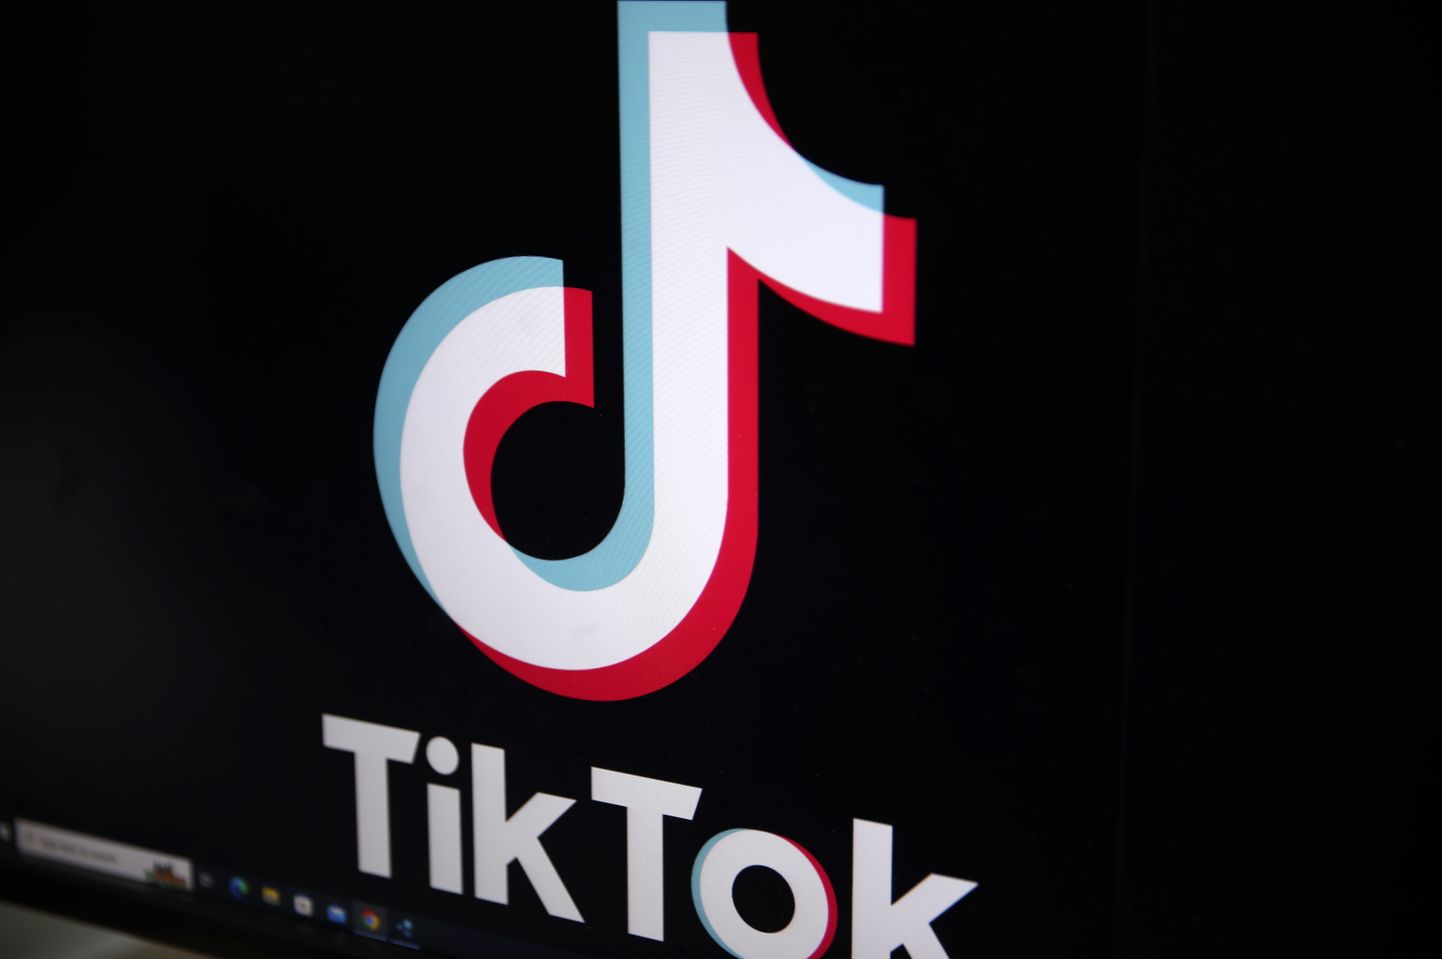 Lietotnes "TikTok" logo.